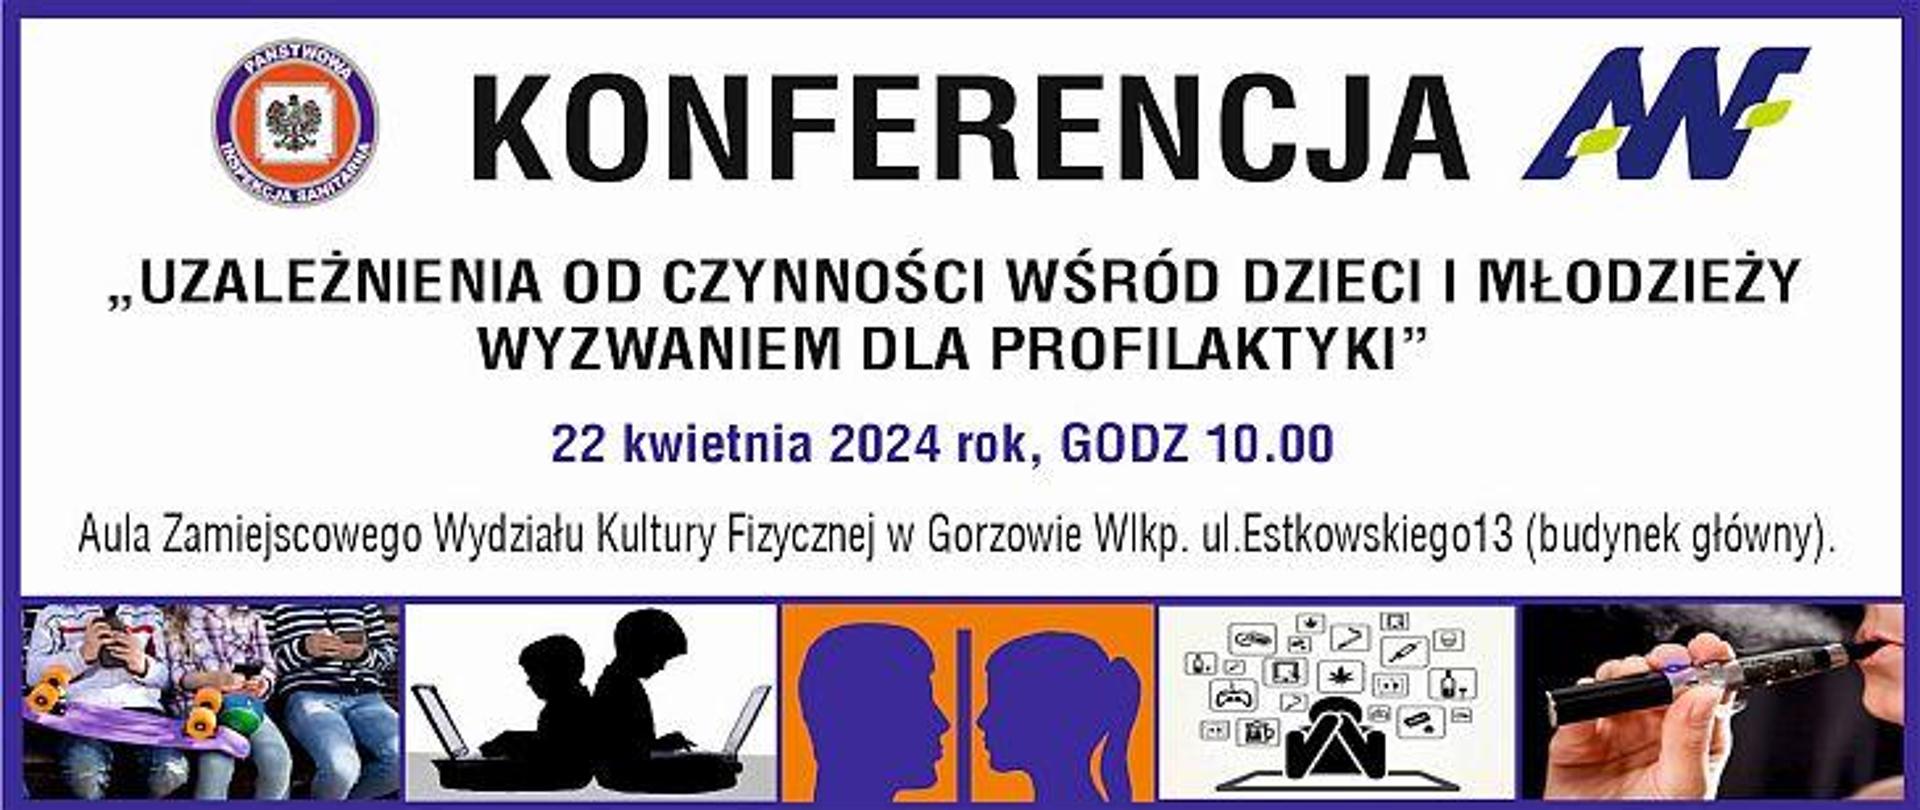 Baner informujący o konferencji - uzależnienia od czynności wyzwaniem dla profilaktyki